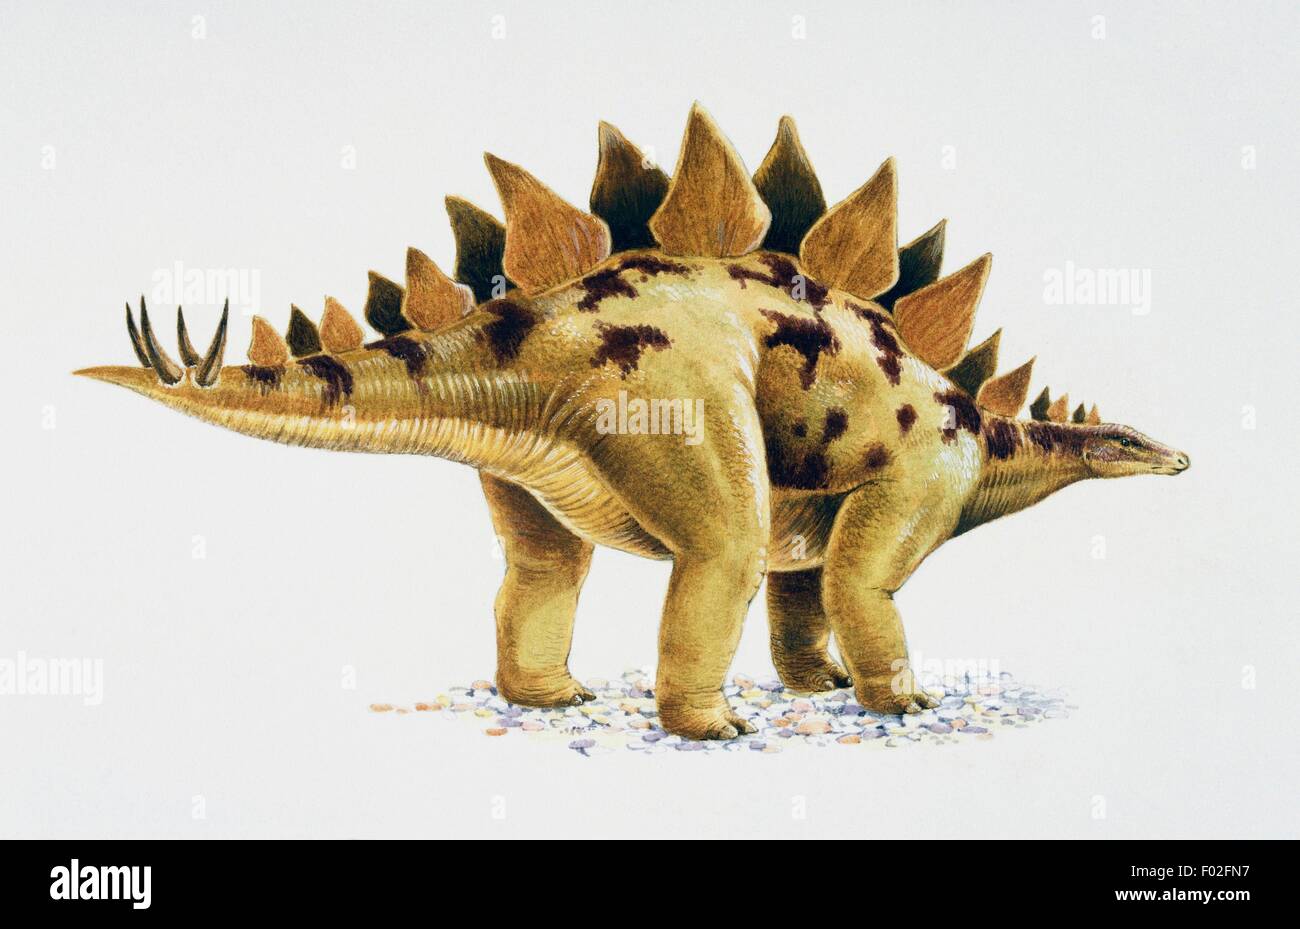 Le Stegosaurus sp, Stegosauridae, fin jurassique. Illustration de Nick Le brochet. Banque D'Images